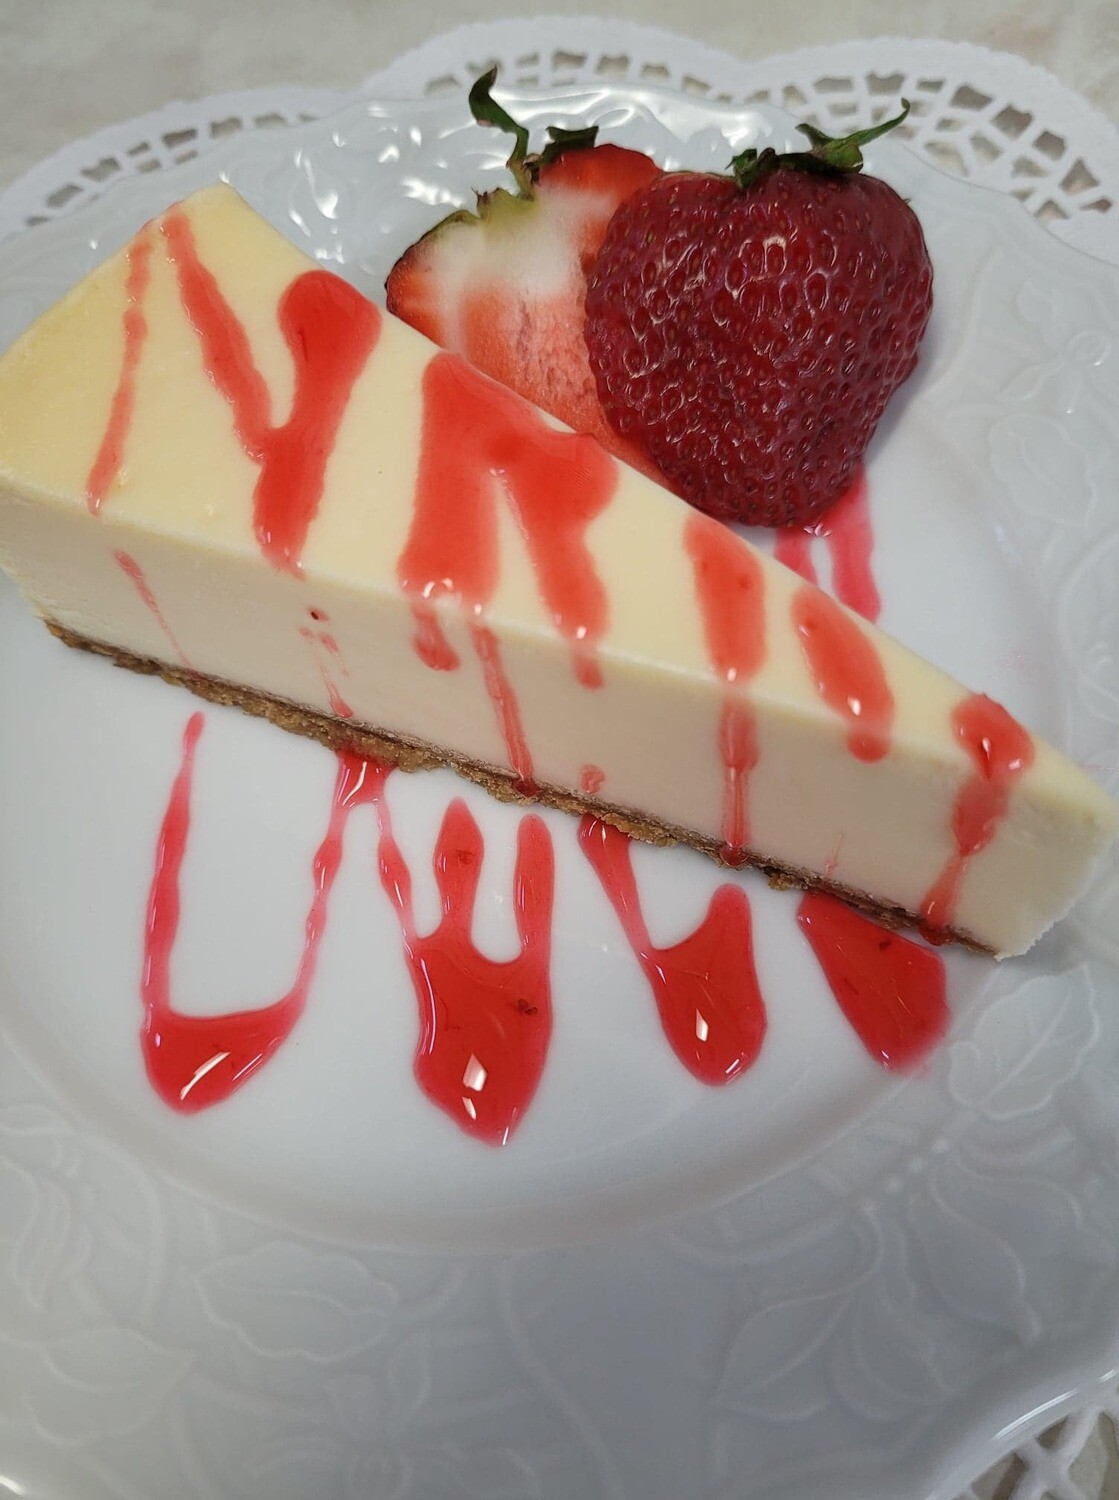 14. Super creamy New York Cheesecake